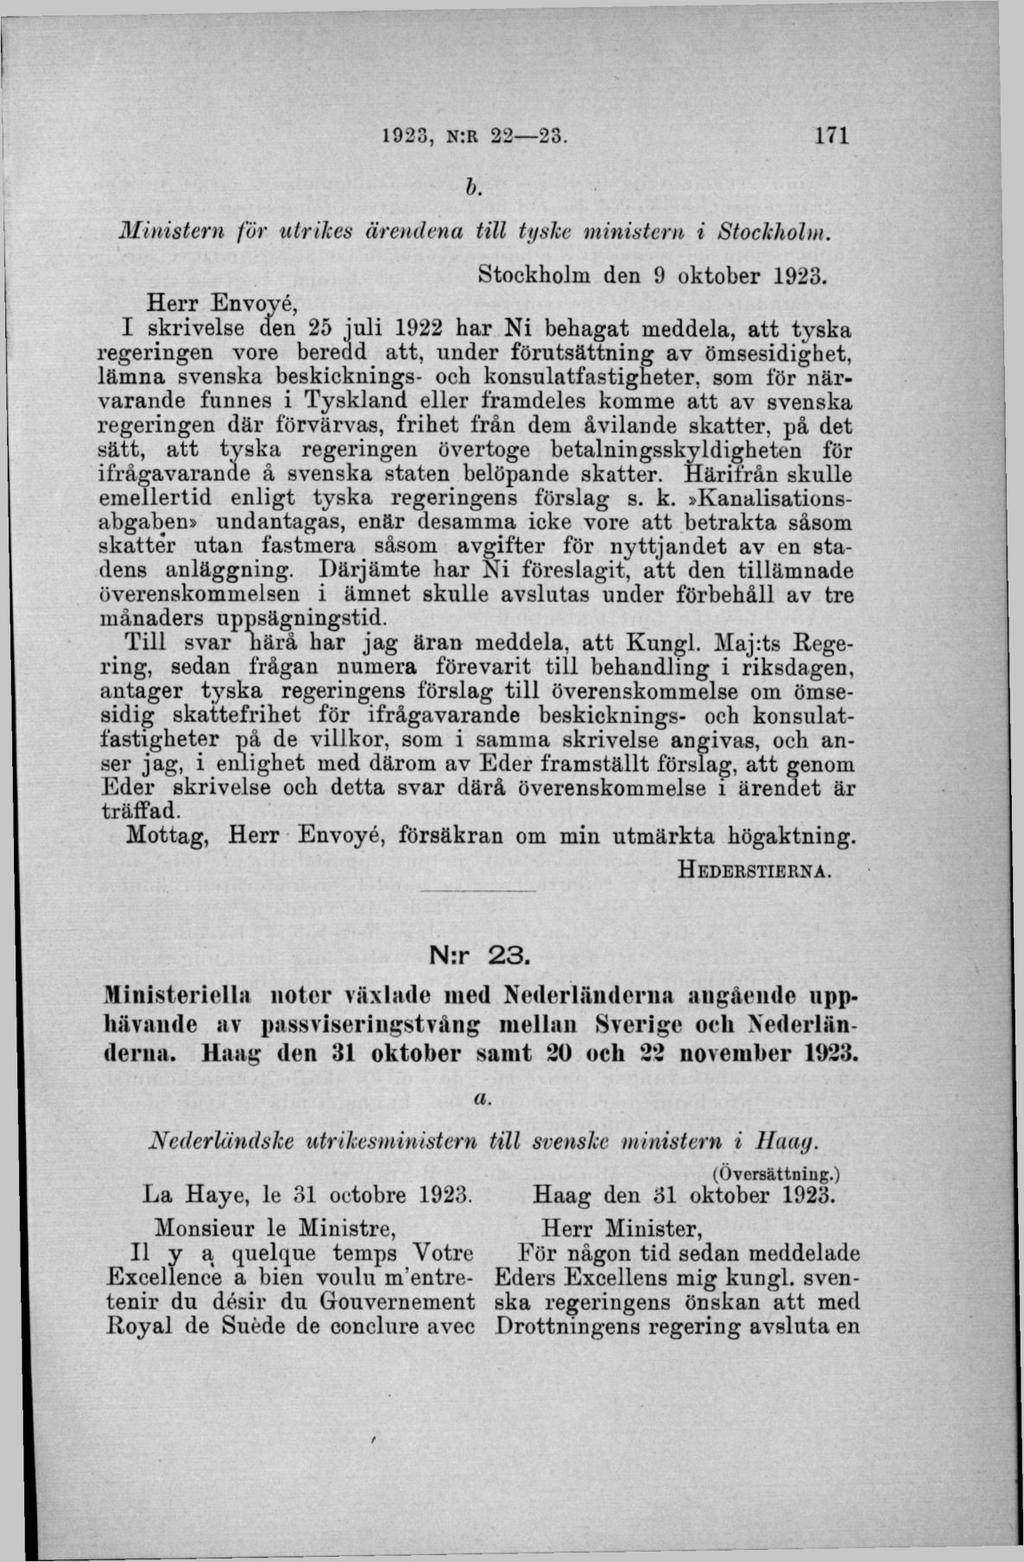 b. M inistern för utrikes ärendena till tyske ministern i Stockholm. Stockholm den 9 oktober 1923.